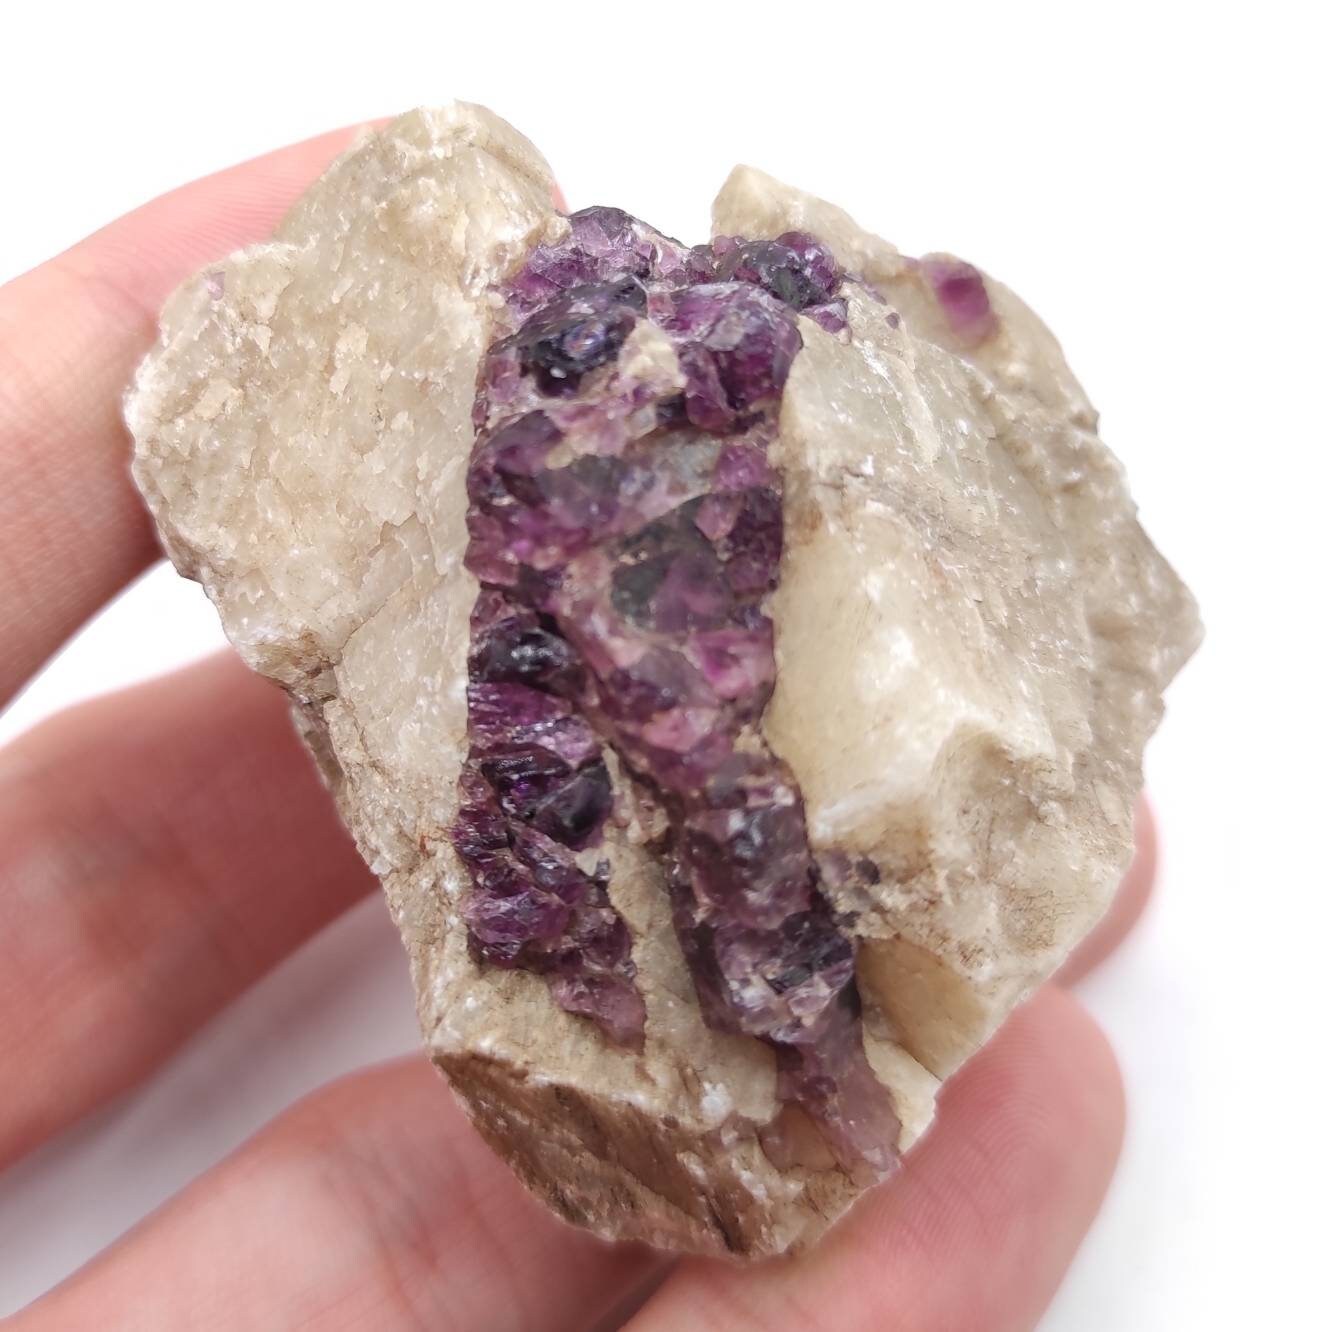 84g Purple Fluorite in Calcite from Harcourt, Ontario - Canadian Fluorite Specimen - Natural Raw Purple Fluorite Mineral - Schickler Mine